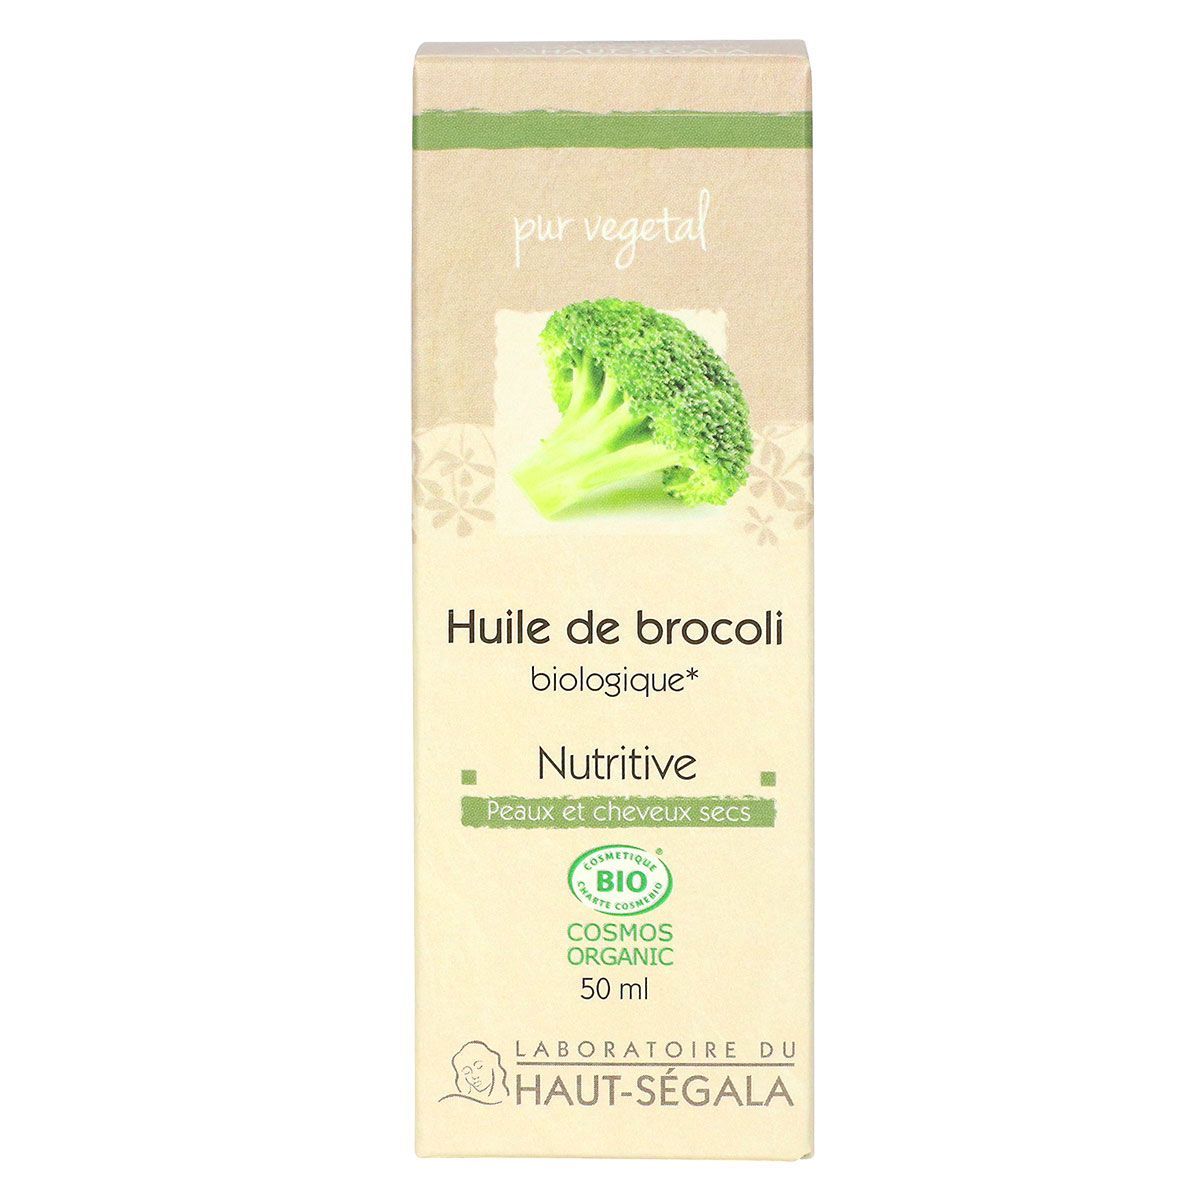 L'huile de brocoli est connue pour être un après-shampooing